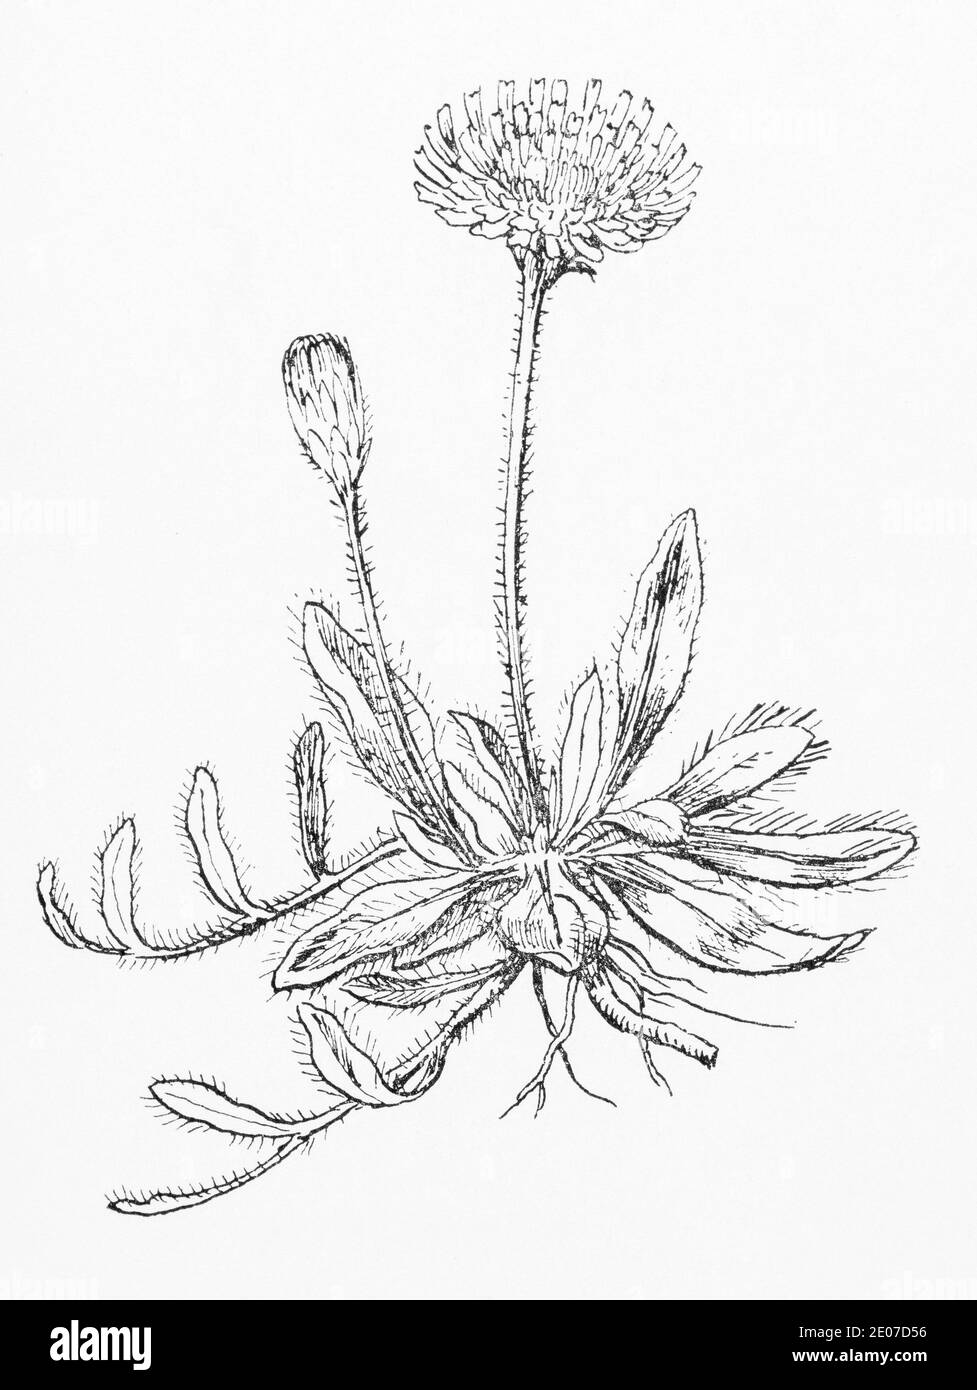 Alte botanische Illustration Gravur von Maus-Ohr Hawkweed / Pilosella officinarum, Hieracium pilosella. Traditionelle Heilkräuter Pflanze. Siehe Hinweise Stockfoto